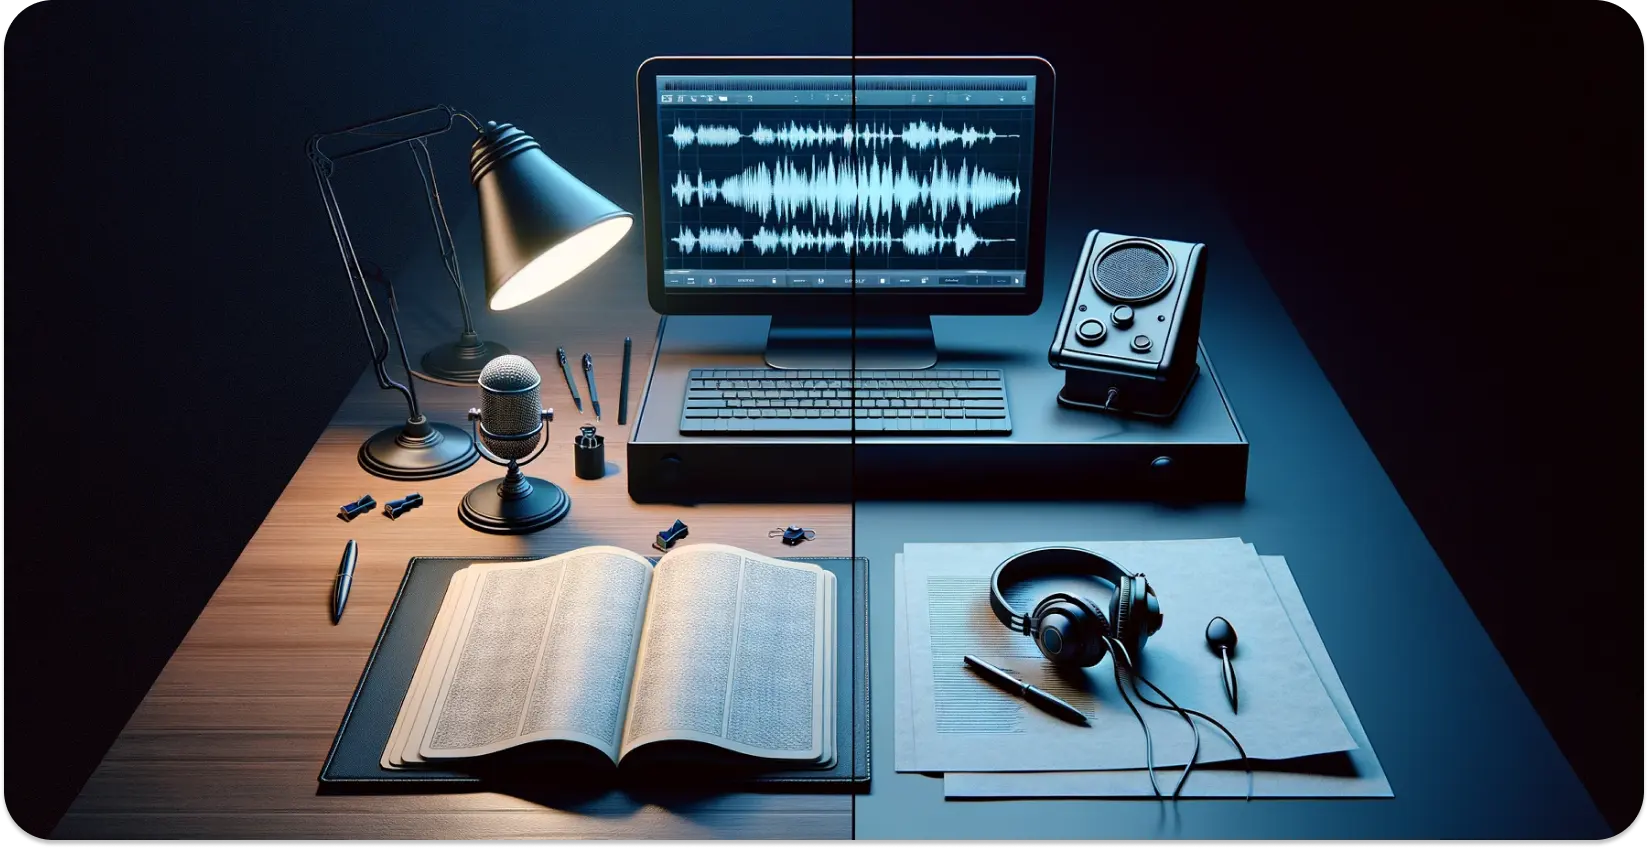 Moderné nastavenie prepisu s mikrofónom, otvorenou knihou a priebehom na obrazovke monitora.